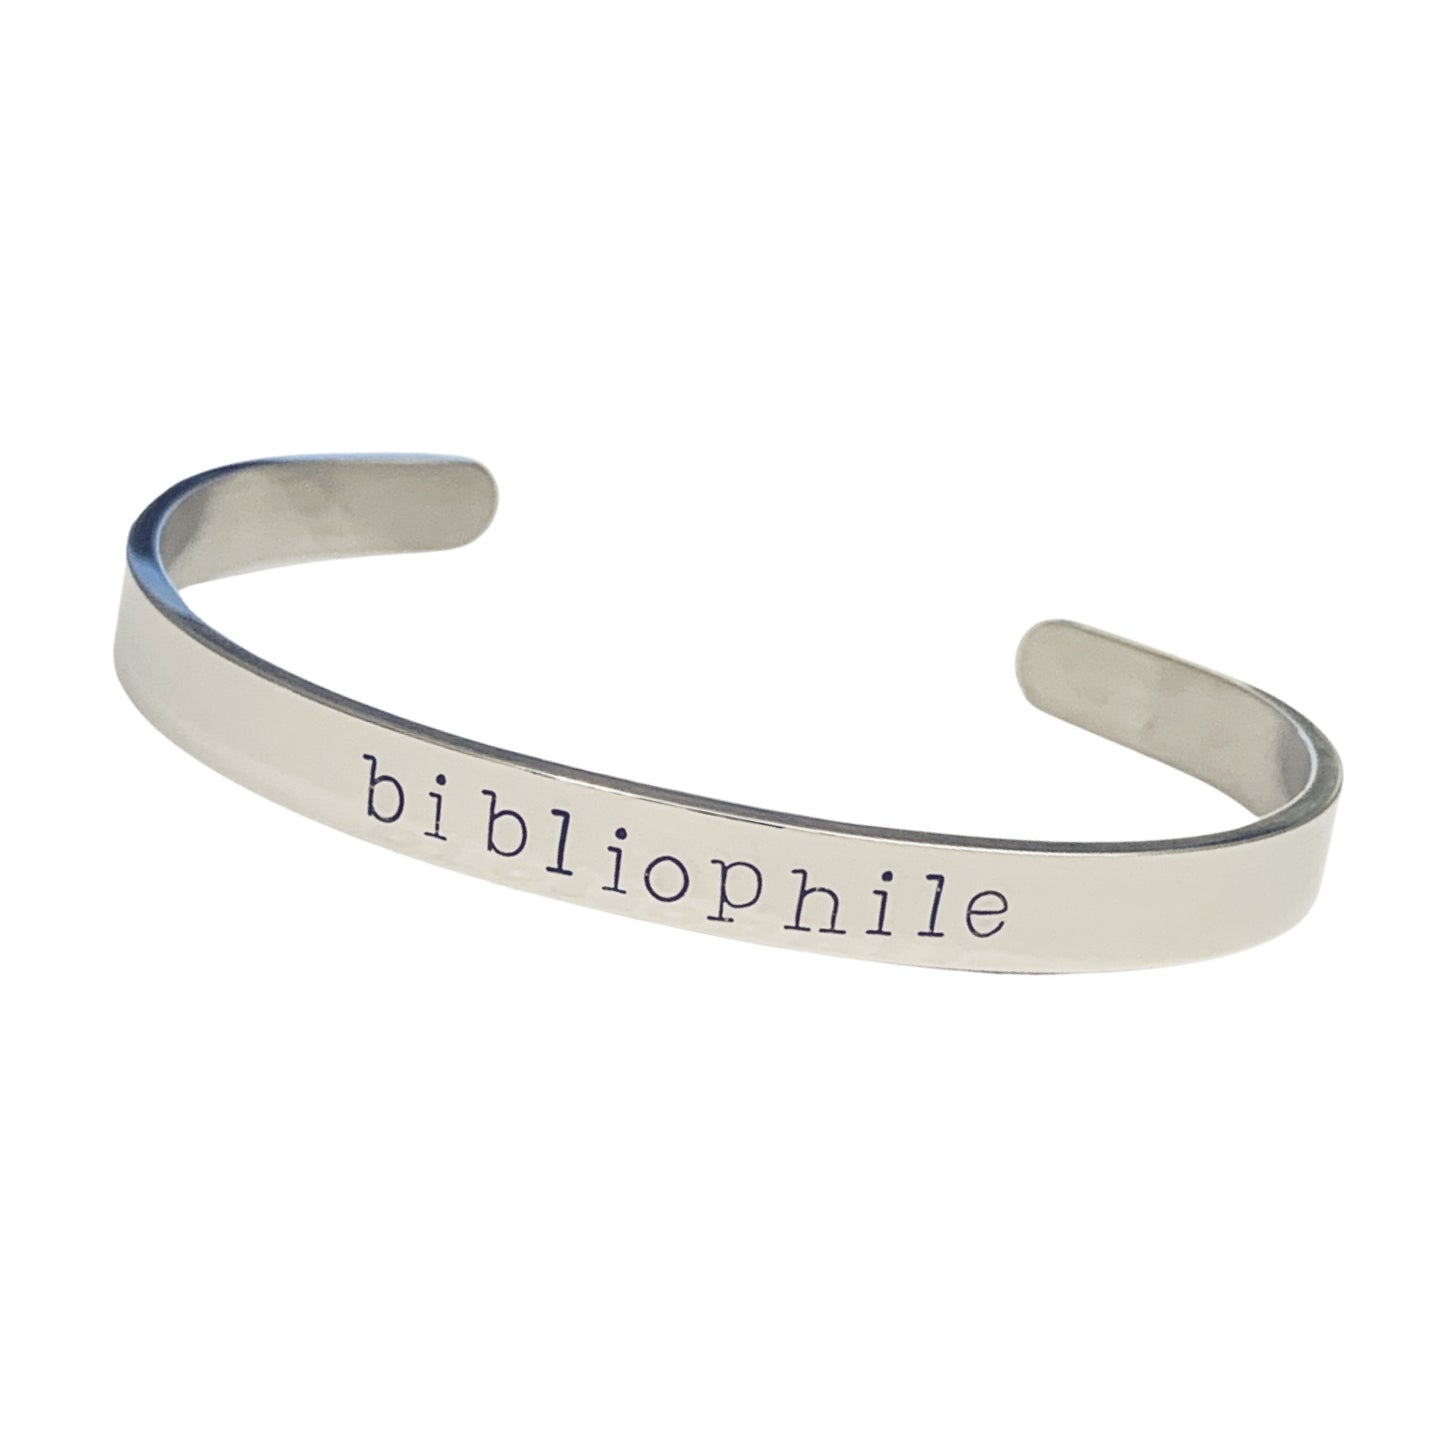 Bibliophile - Cuff Bracelet